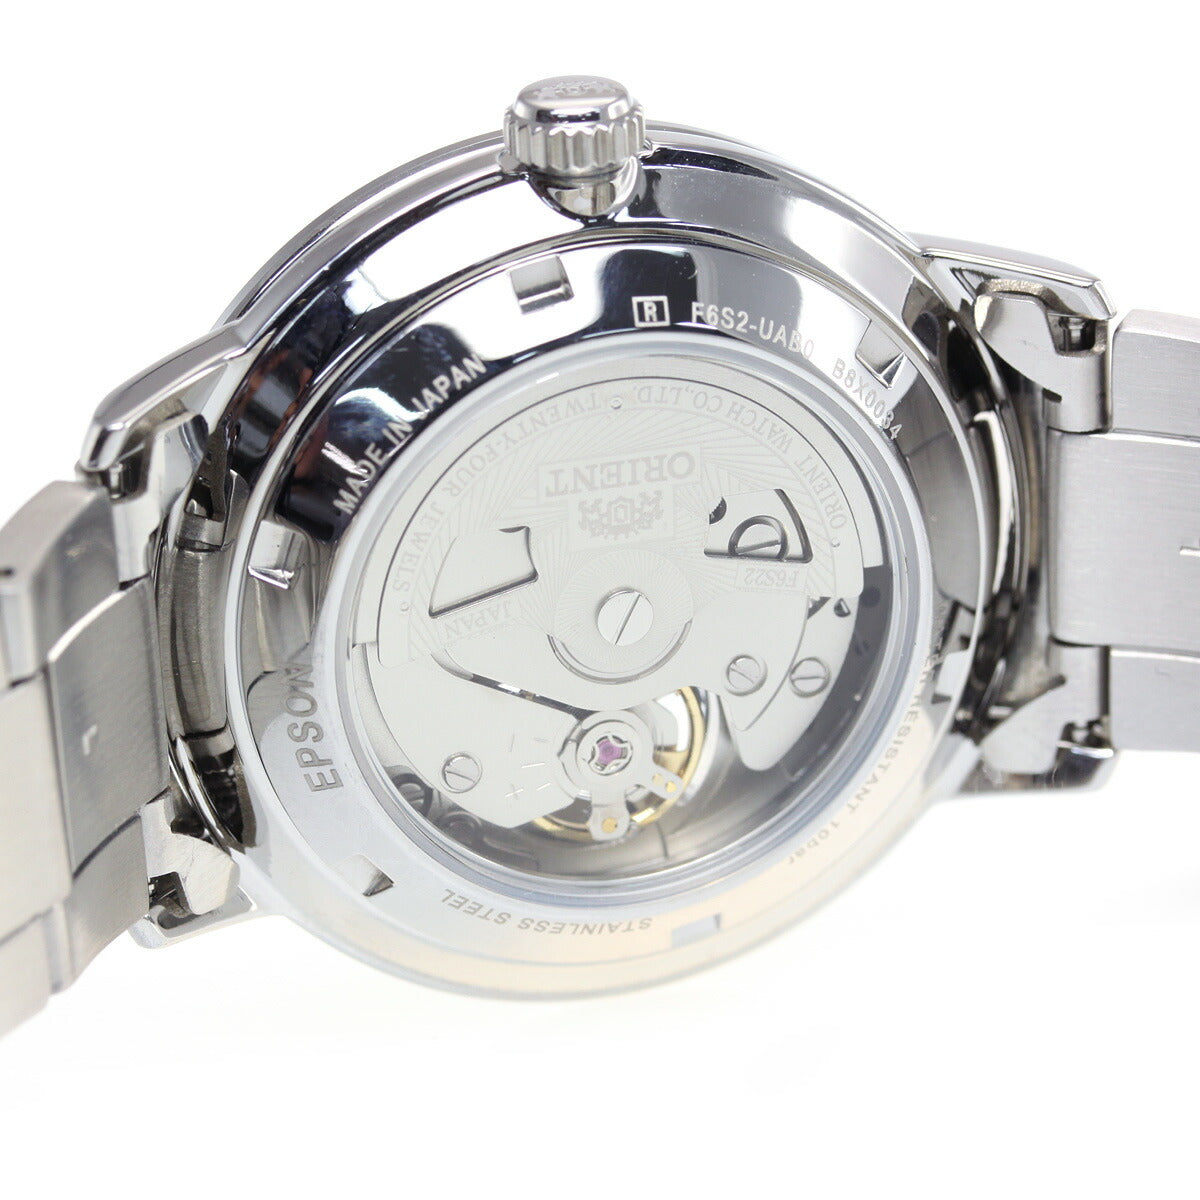 オリエント ORIENT 腕時計 メンズ 自動巻き メカニカル コンテンポラリー CONTEMPORARY セミスケルトン RN-AR0101L